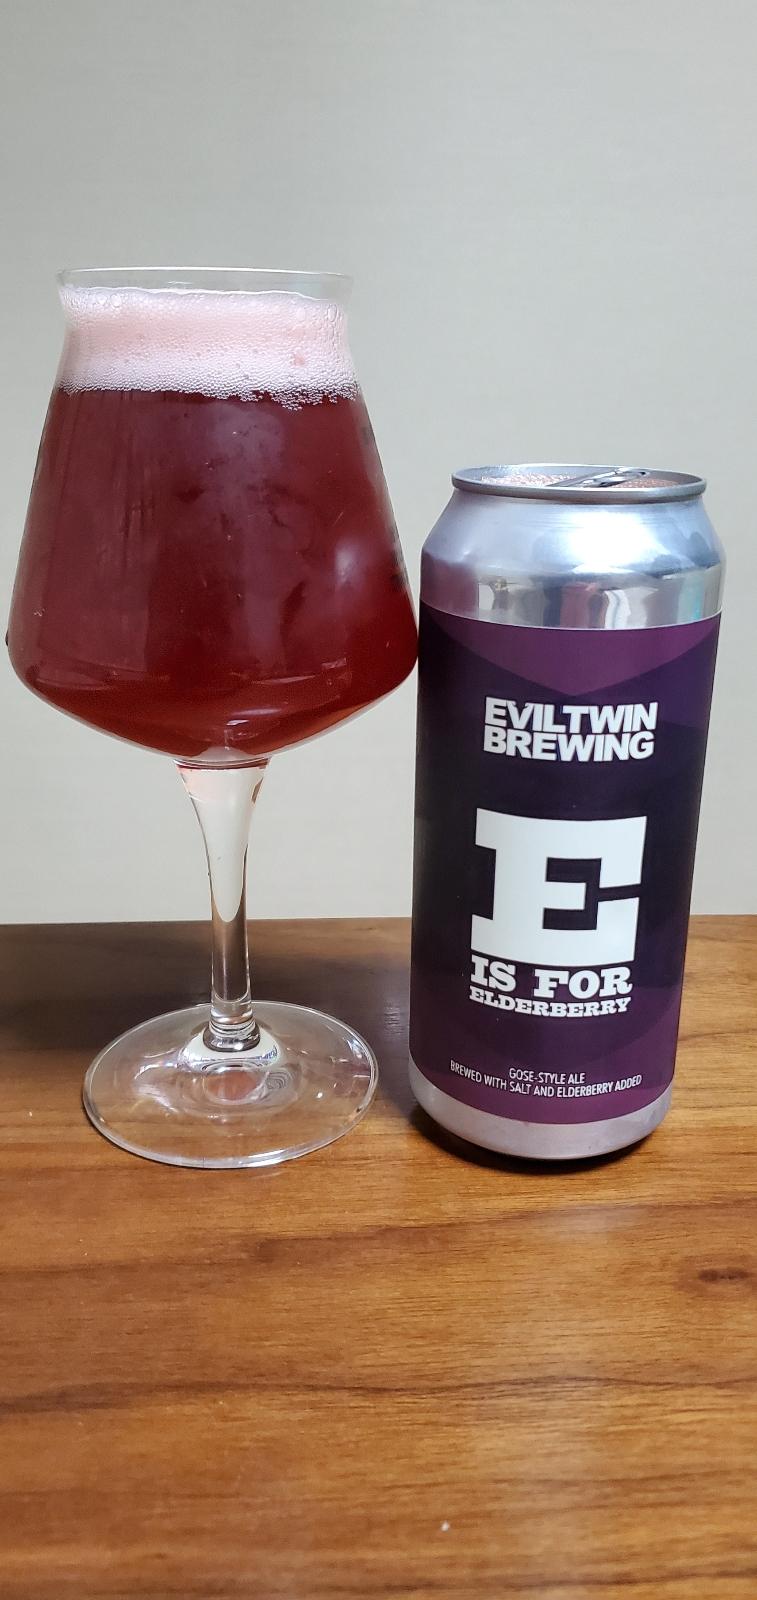 E Is For Elderberry